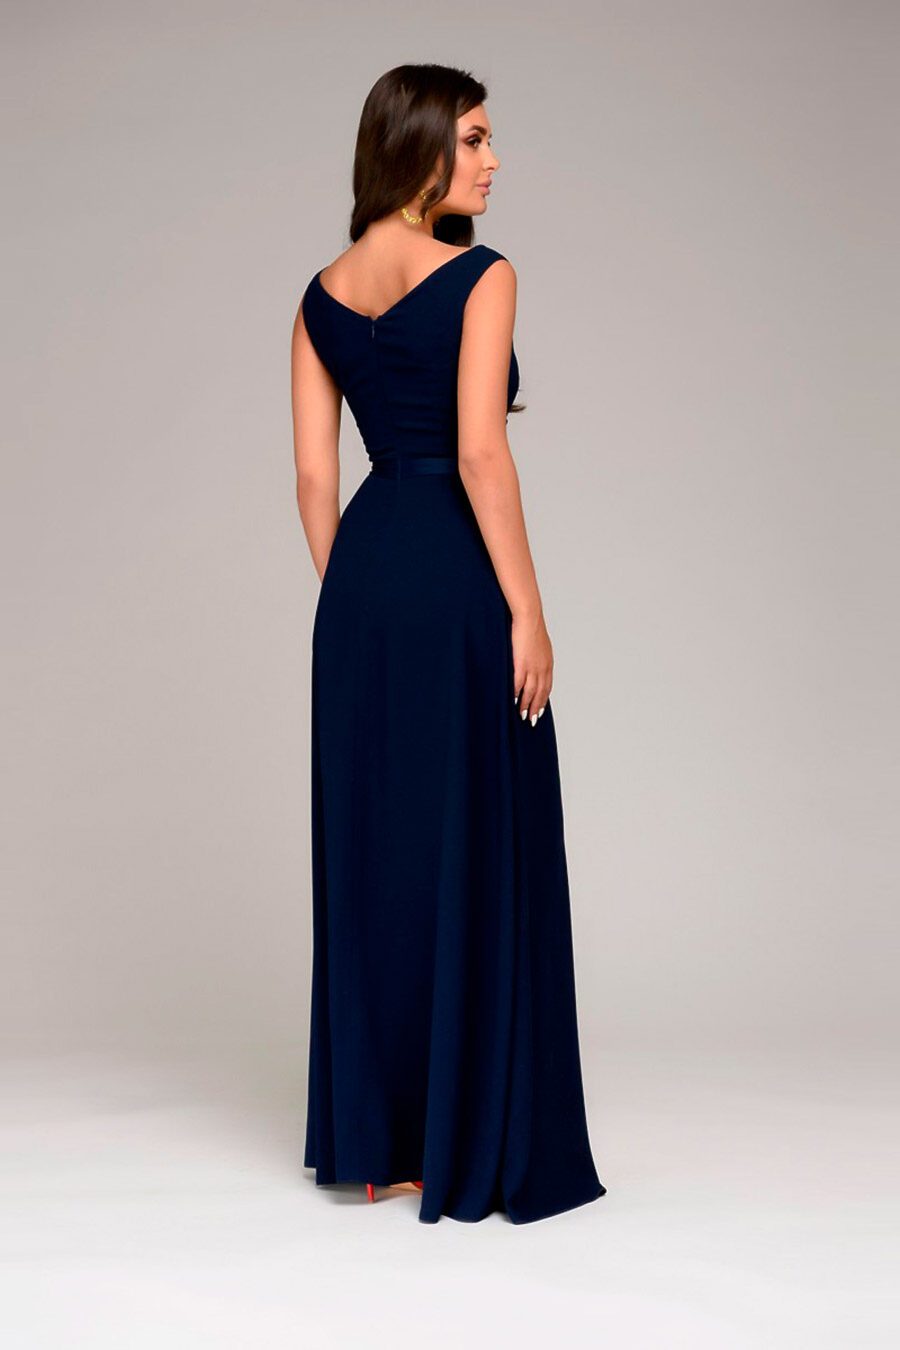 Платье для женщин 1001 DRESS 740913 купить оптом от производителя. Совместная покупка женской одежды в OptMoyo